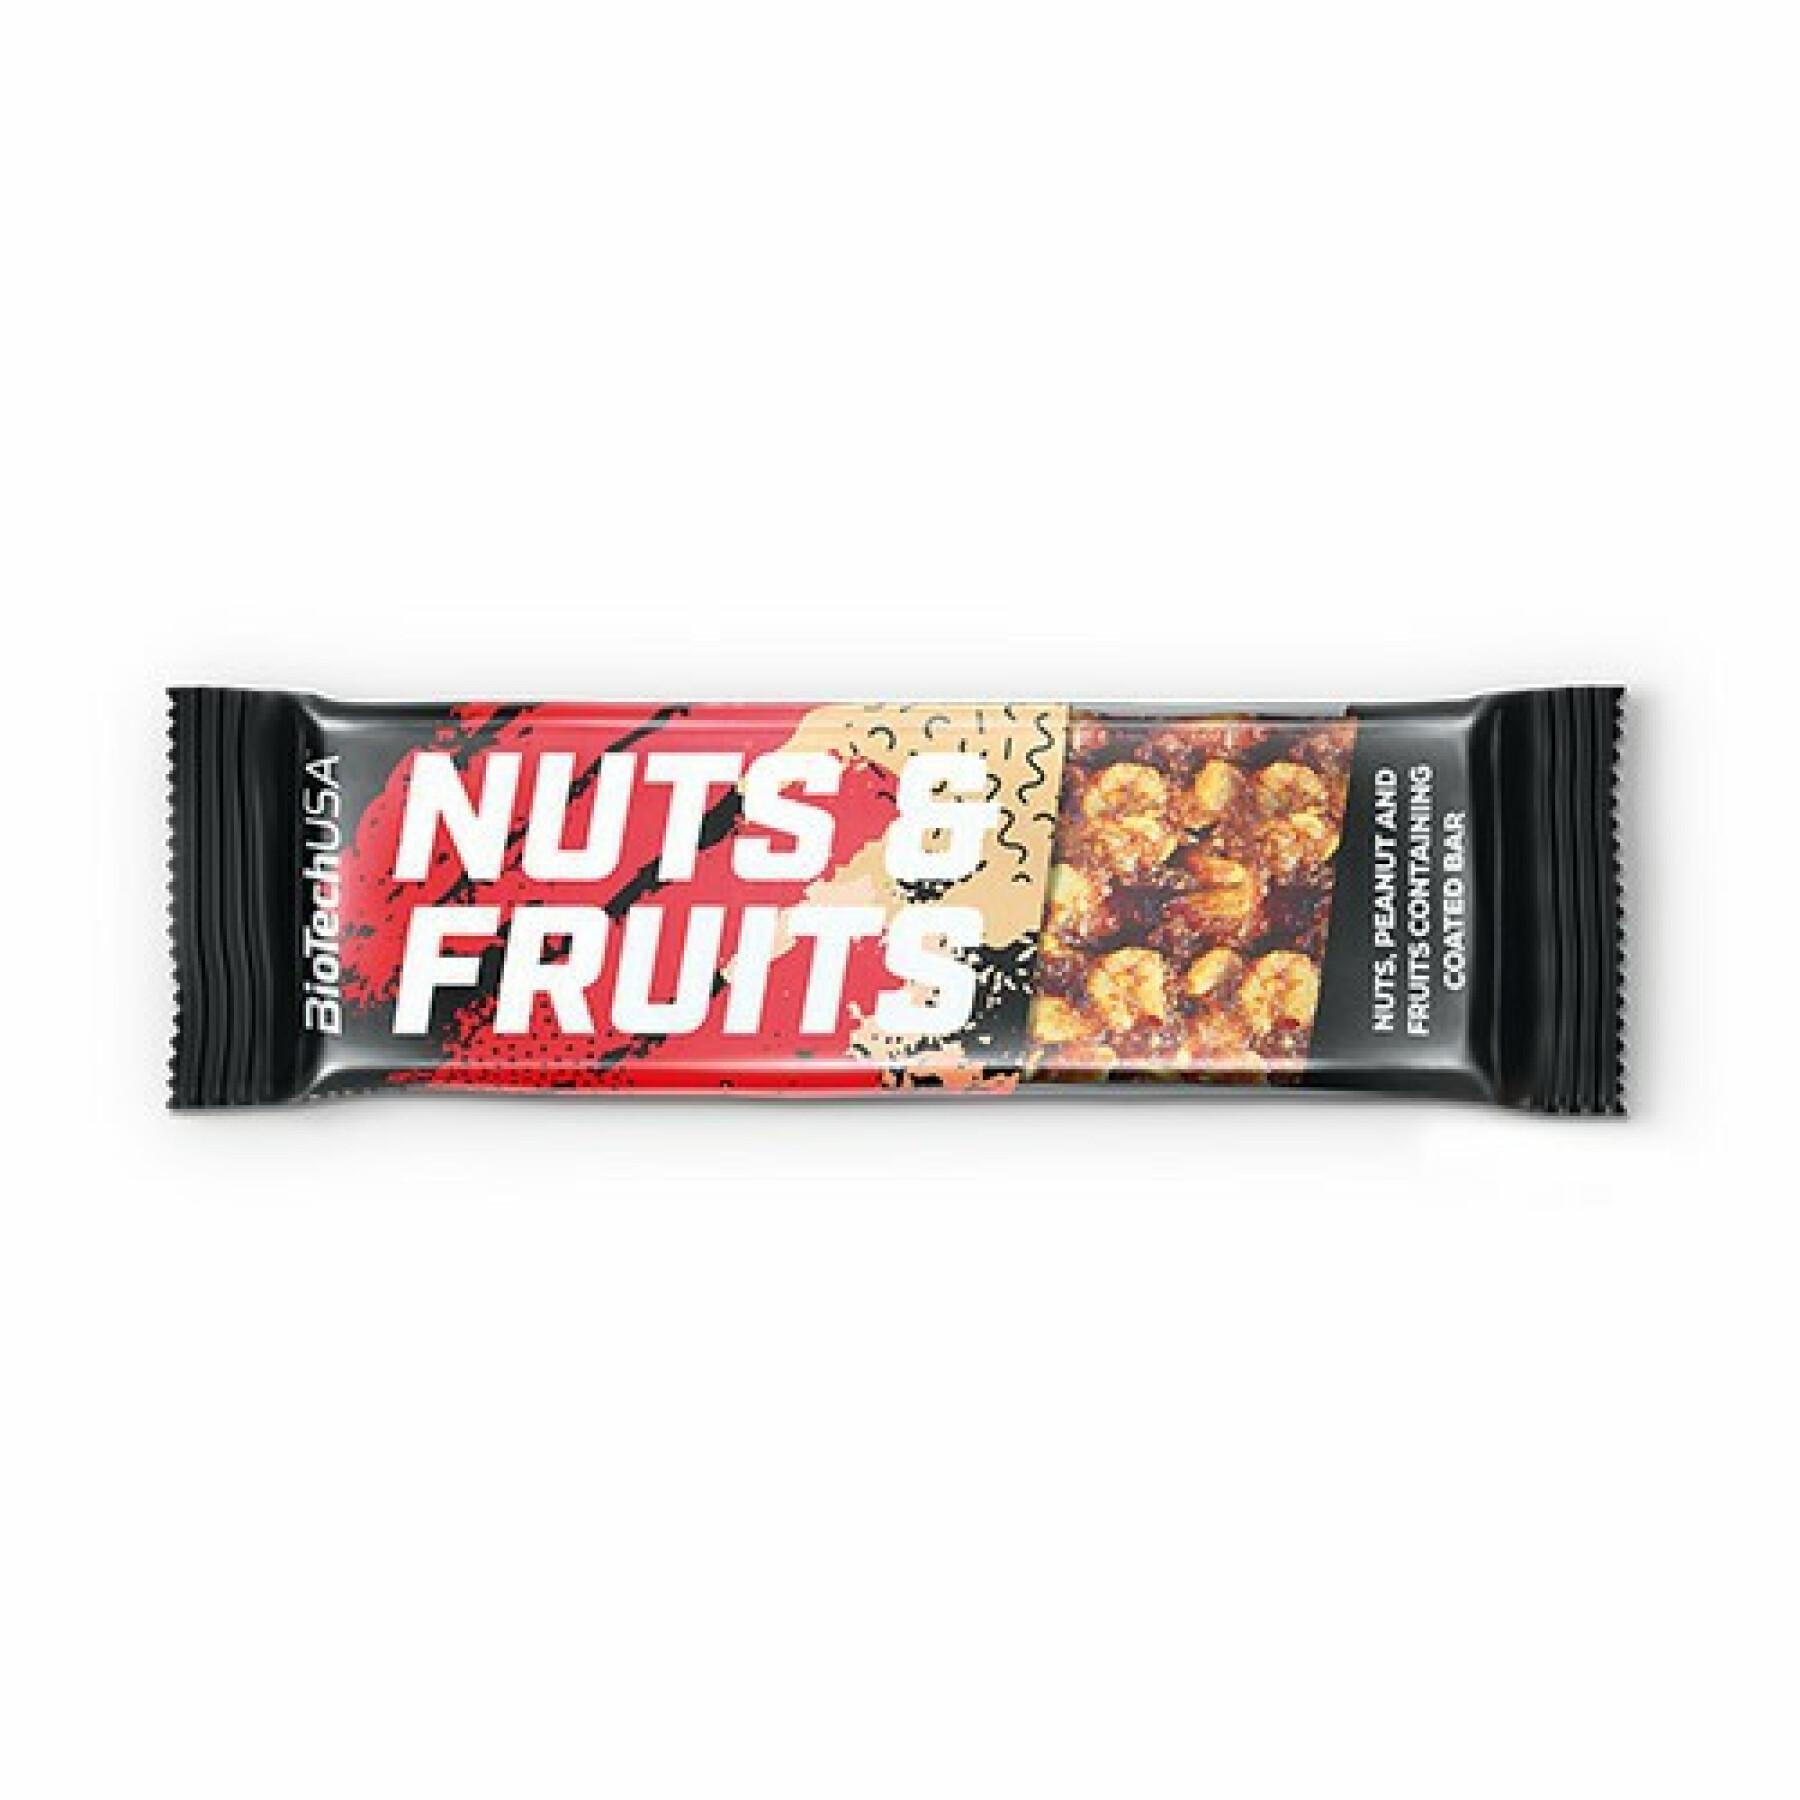 28er Pack Kartons mit Nuss- und Fruchtsnacks Biotech USA - Noix-arachide-fruits